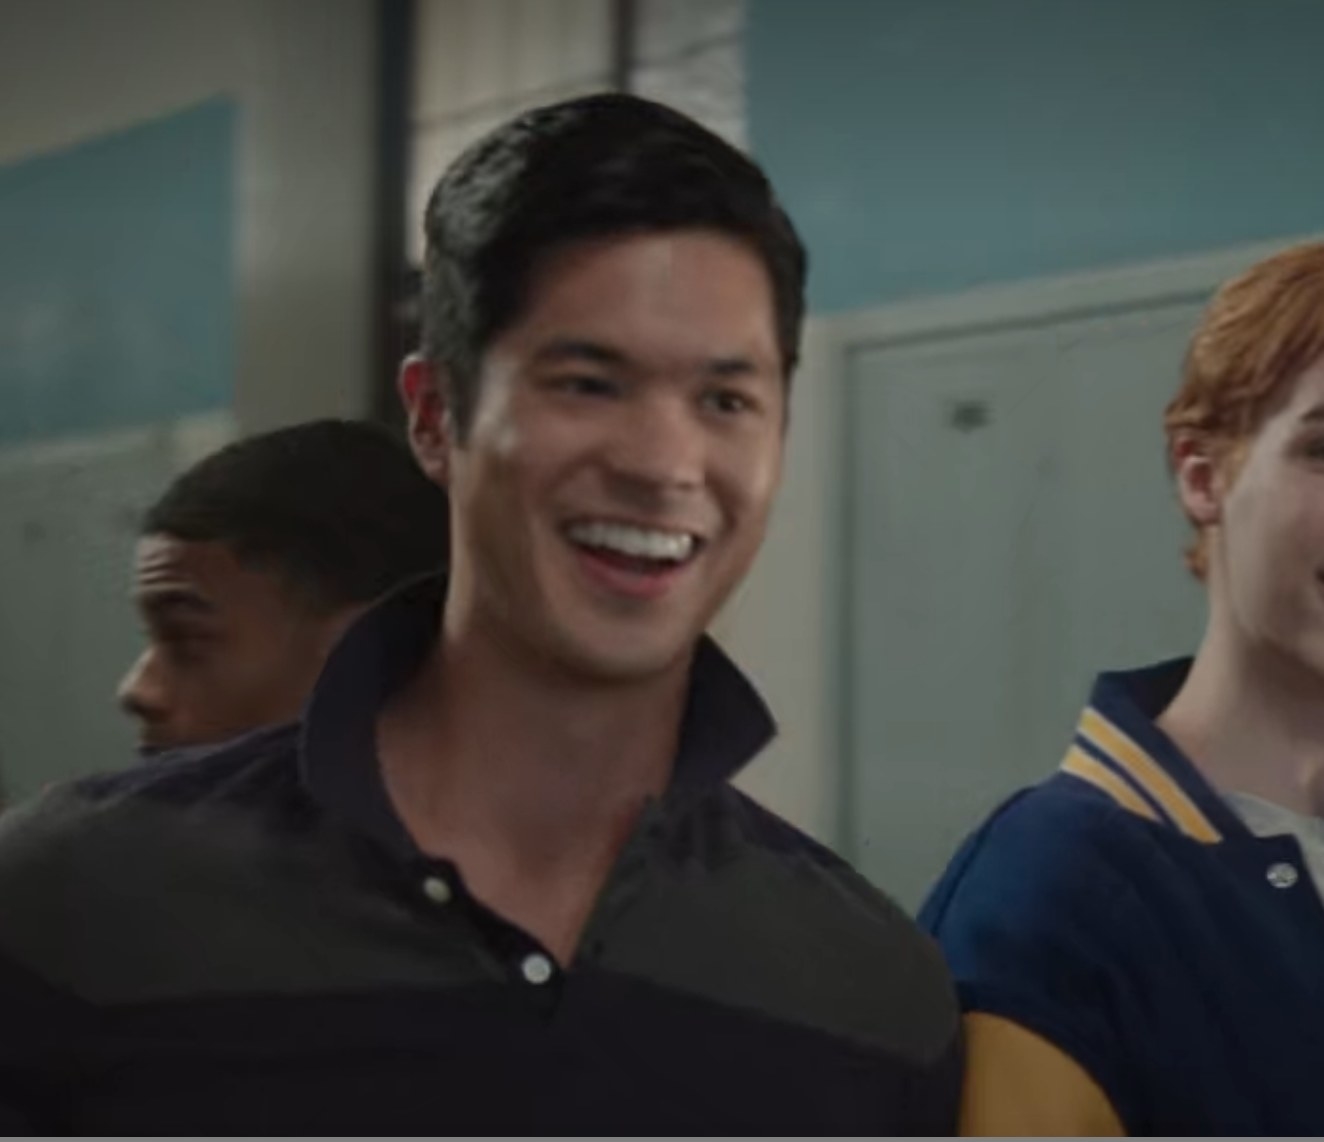 Ross Butler as Reggie laughs in the school hallway